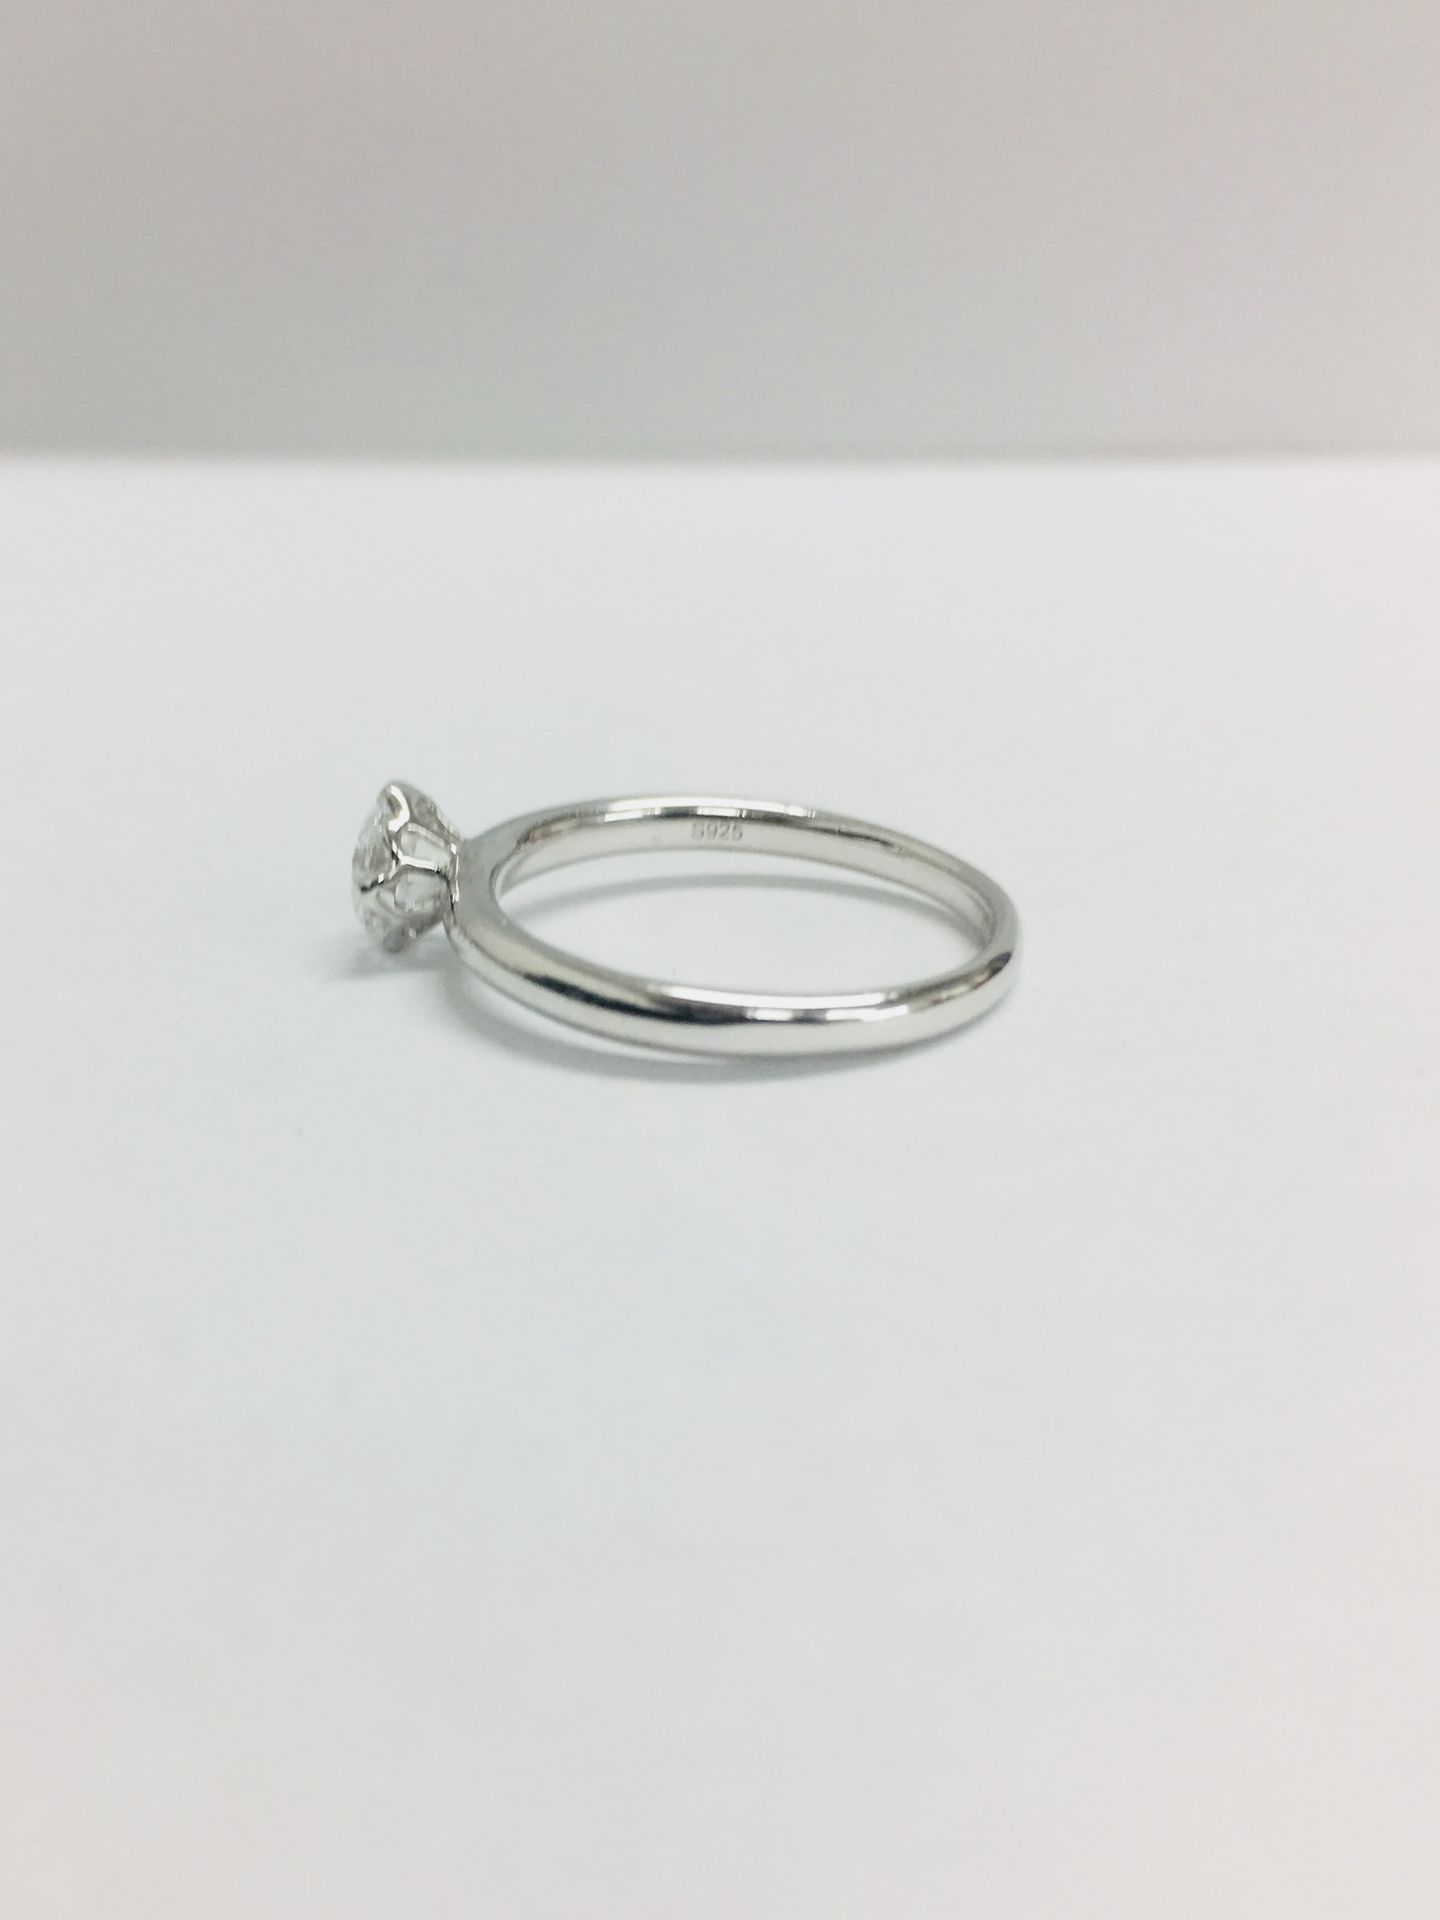 Platinum diamond solitaire ring,0.50ct brillliant cut diamond h colour vs clarity(clarity enhanced), - Bild 3 aus 6